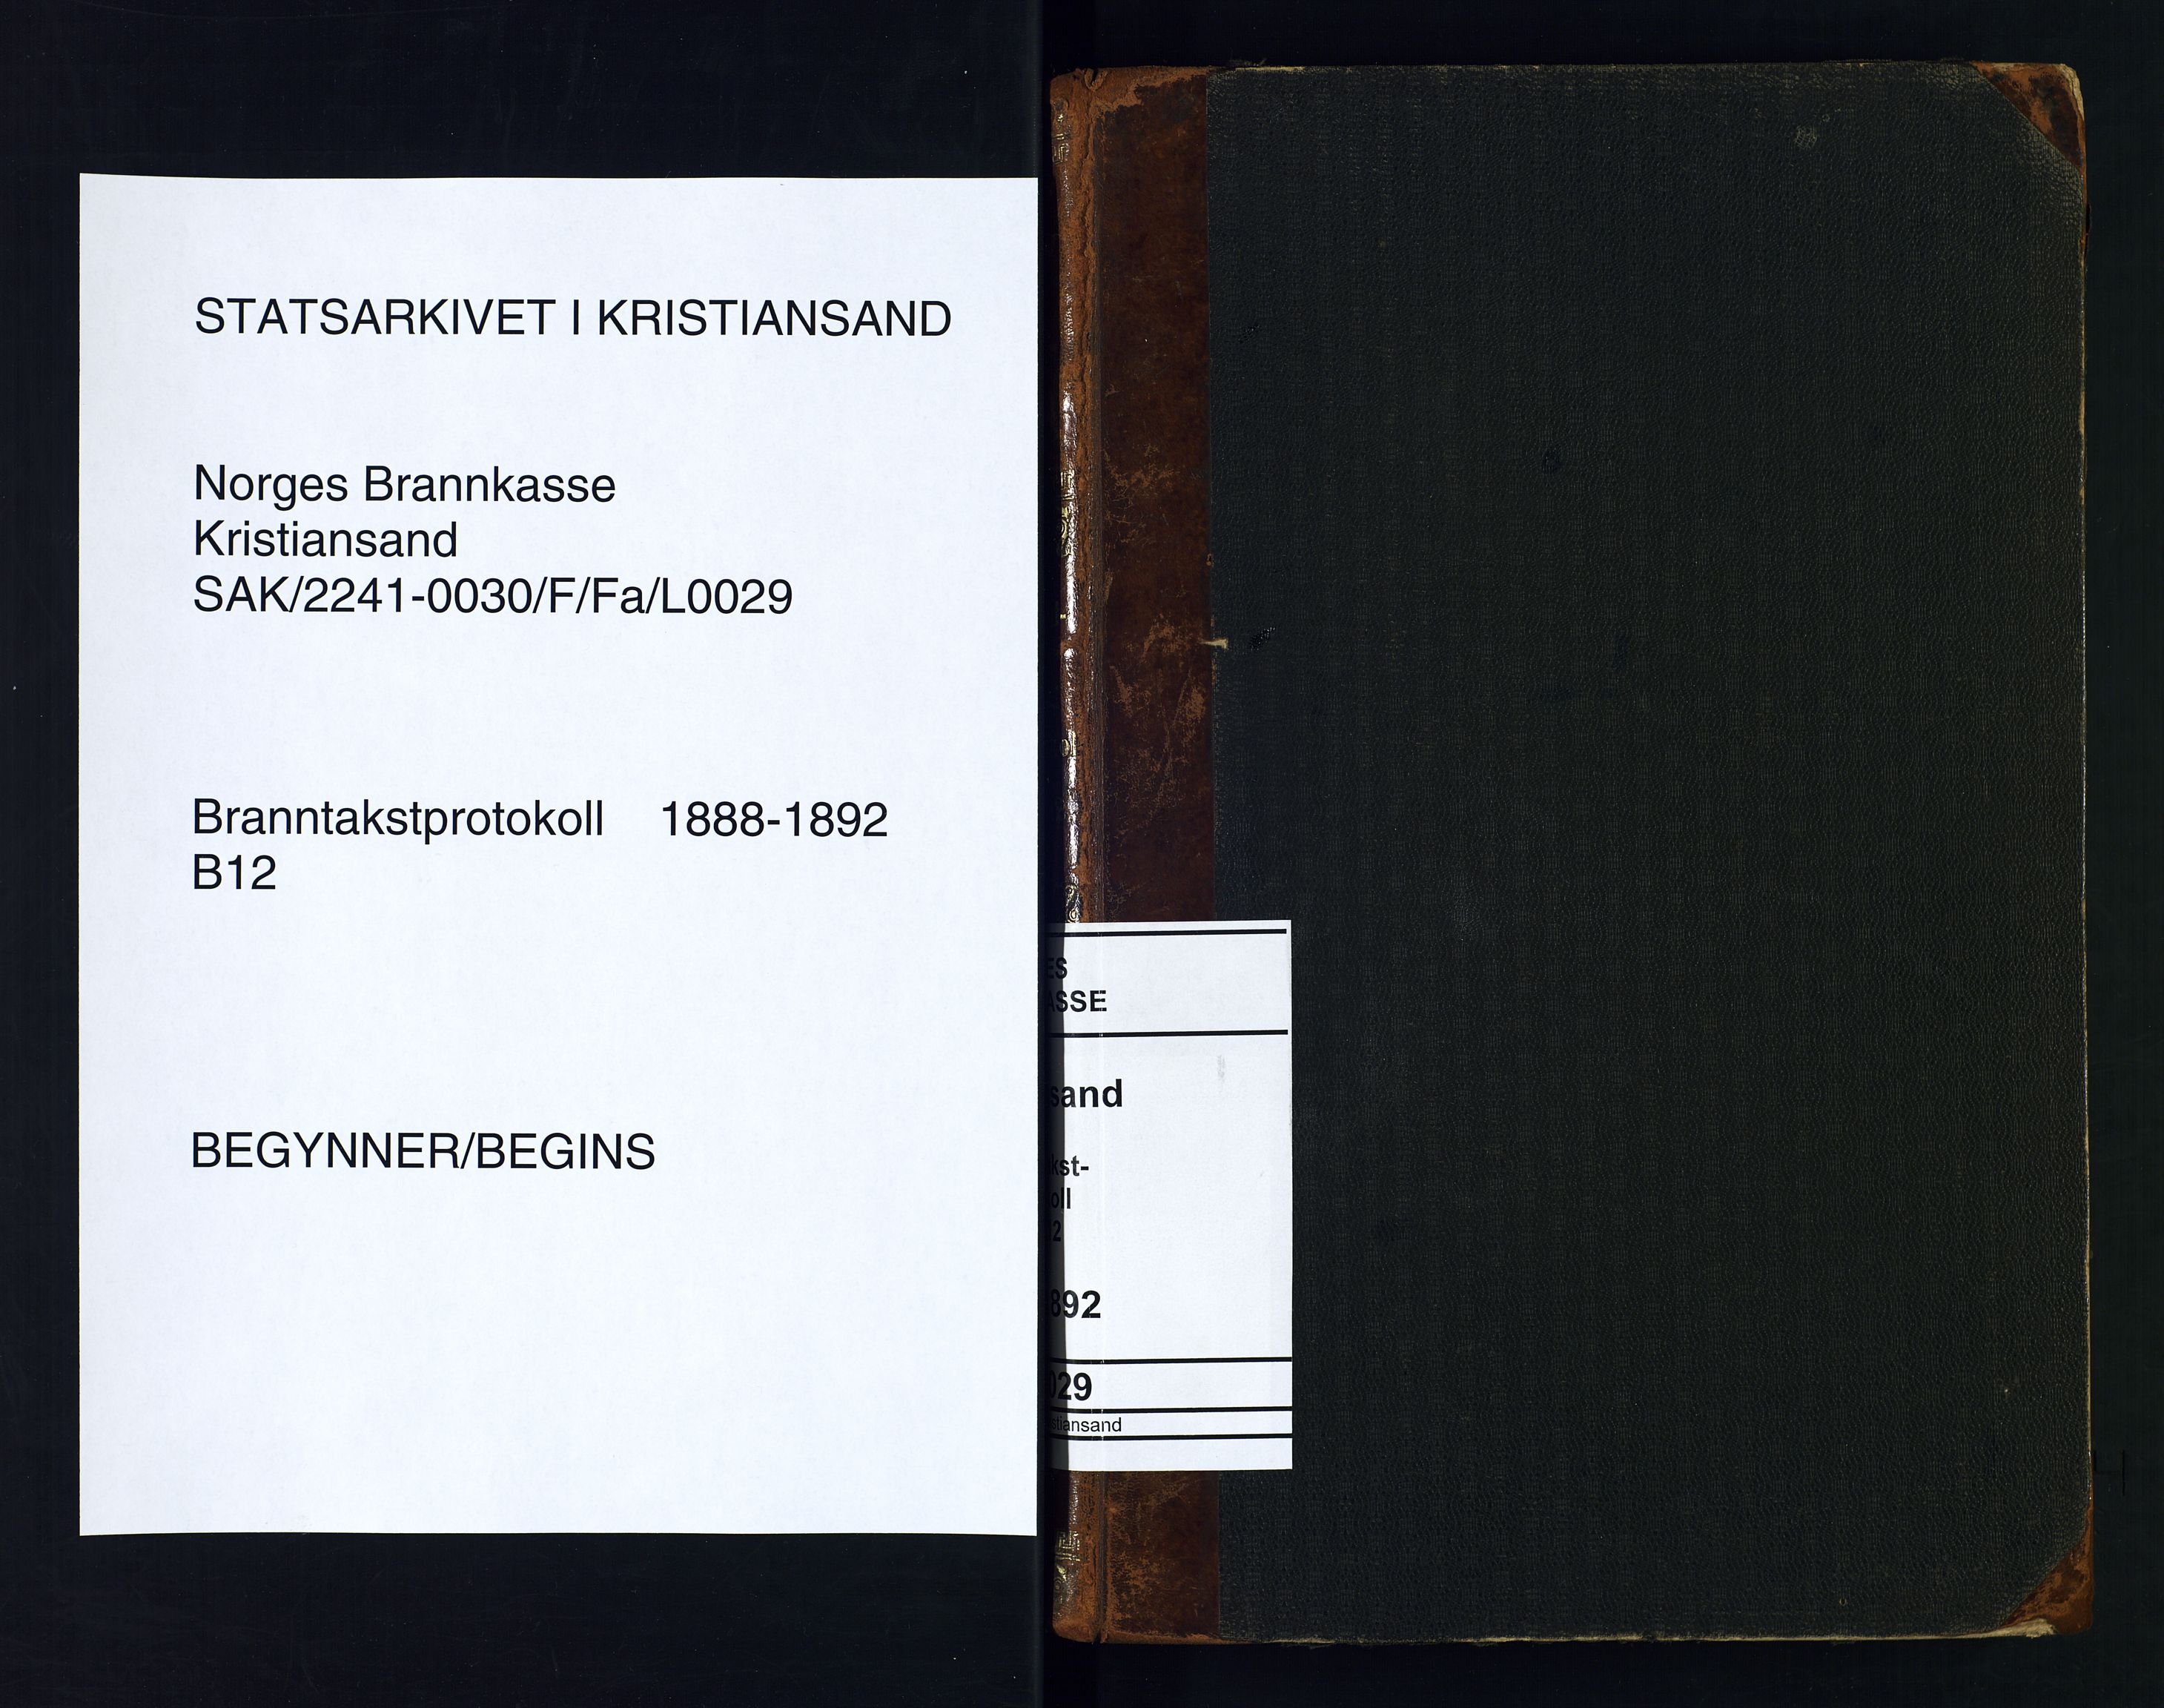 Norges Brannkasse Kristiansand, SAK/2241-0030/F/Fa/L0029: Branntakstprotokoll nr. B12 avskrift av delvis brent protokoll (Original Fa-0075), 1888-1892